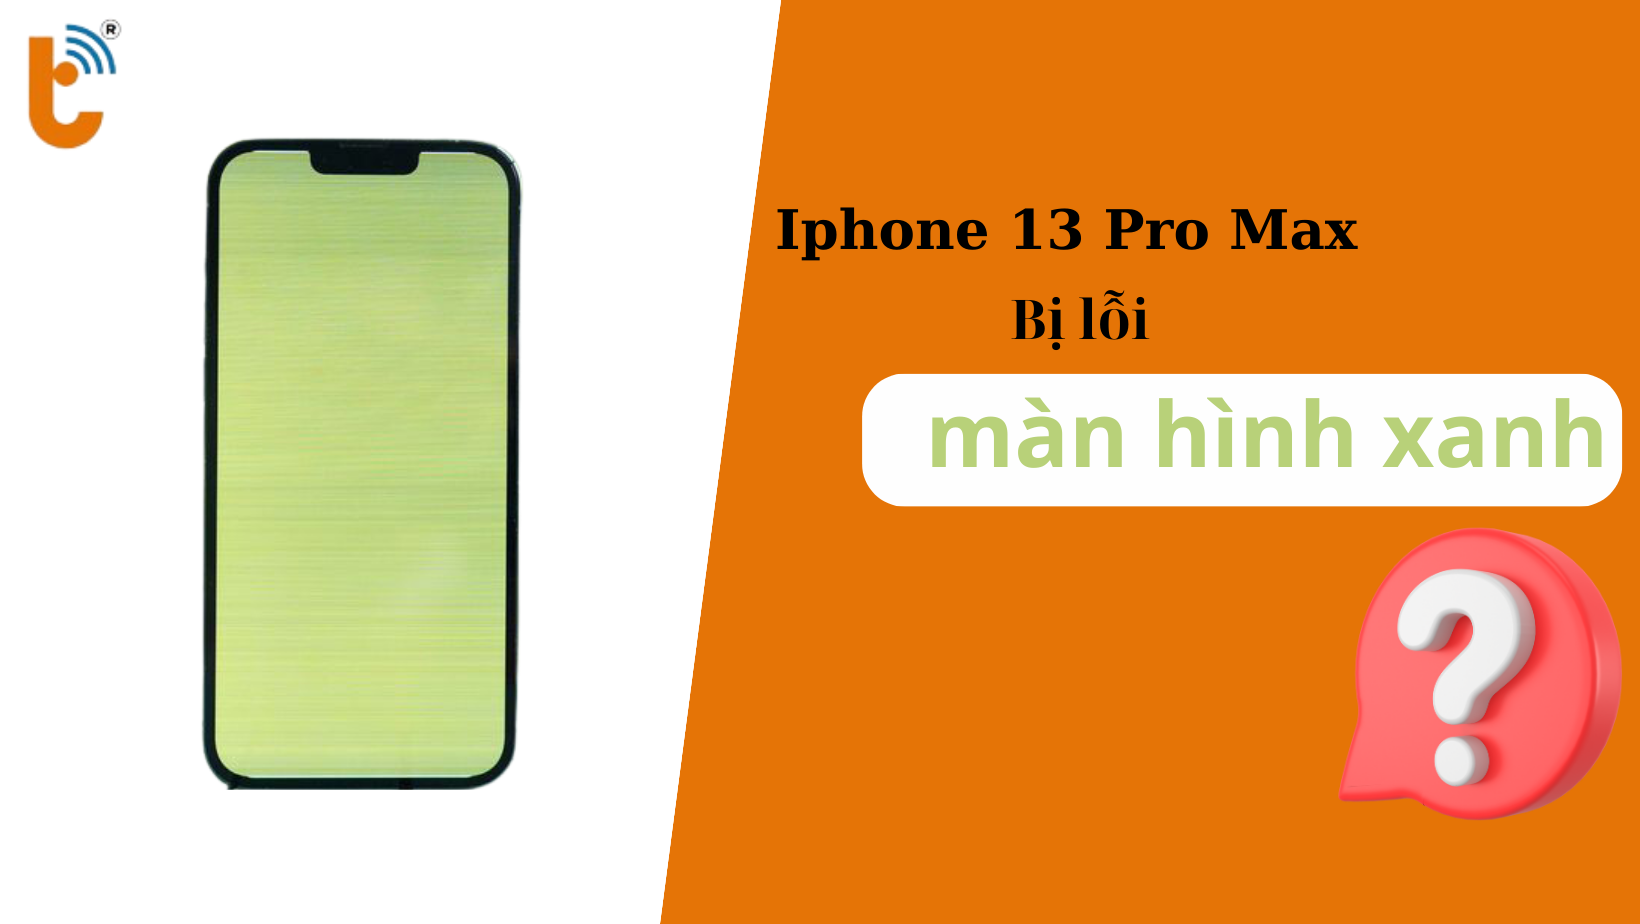 iPhone 13 Pro Max bị lỗi màn hình xanh - Hướng xử lý hiệu quả tiết kiệm cho người dùng